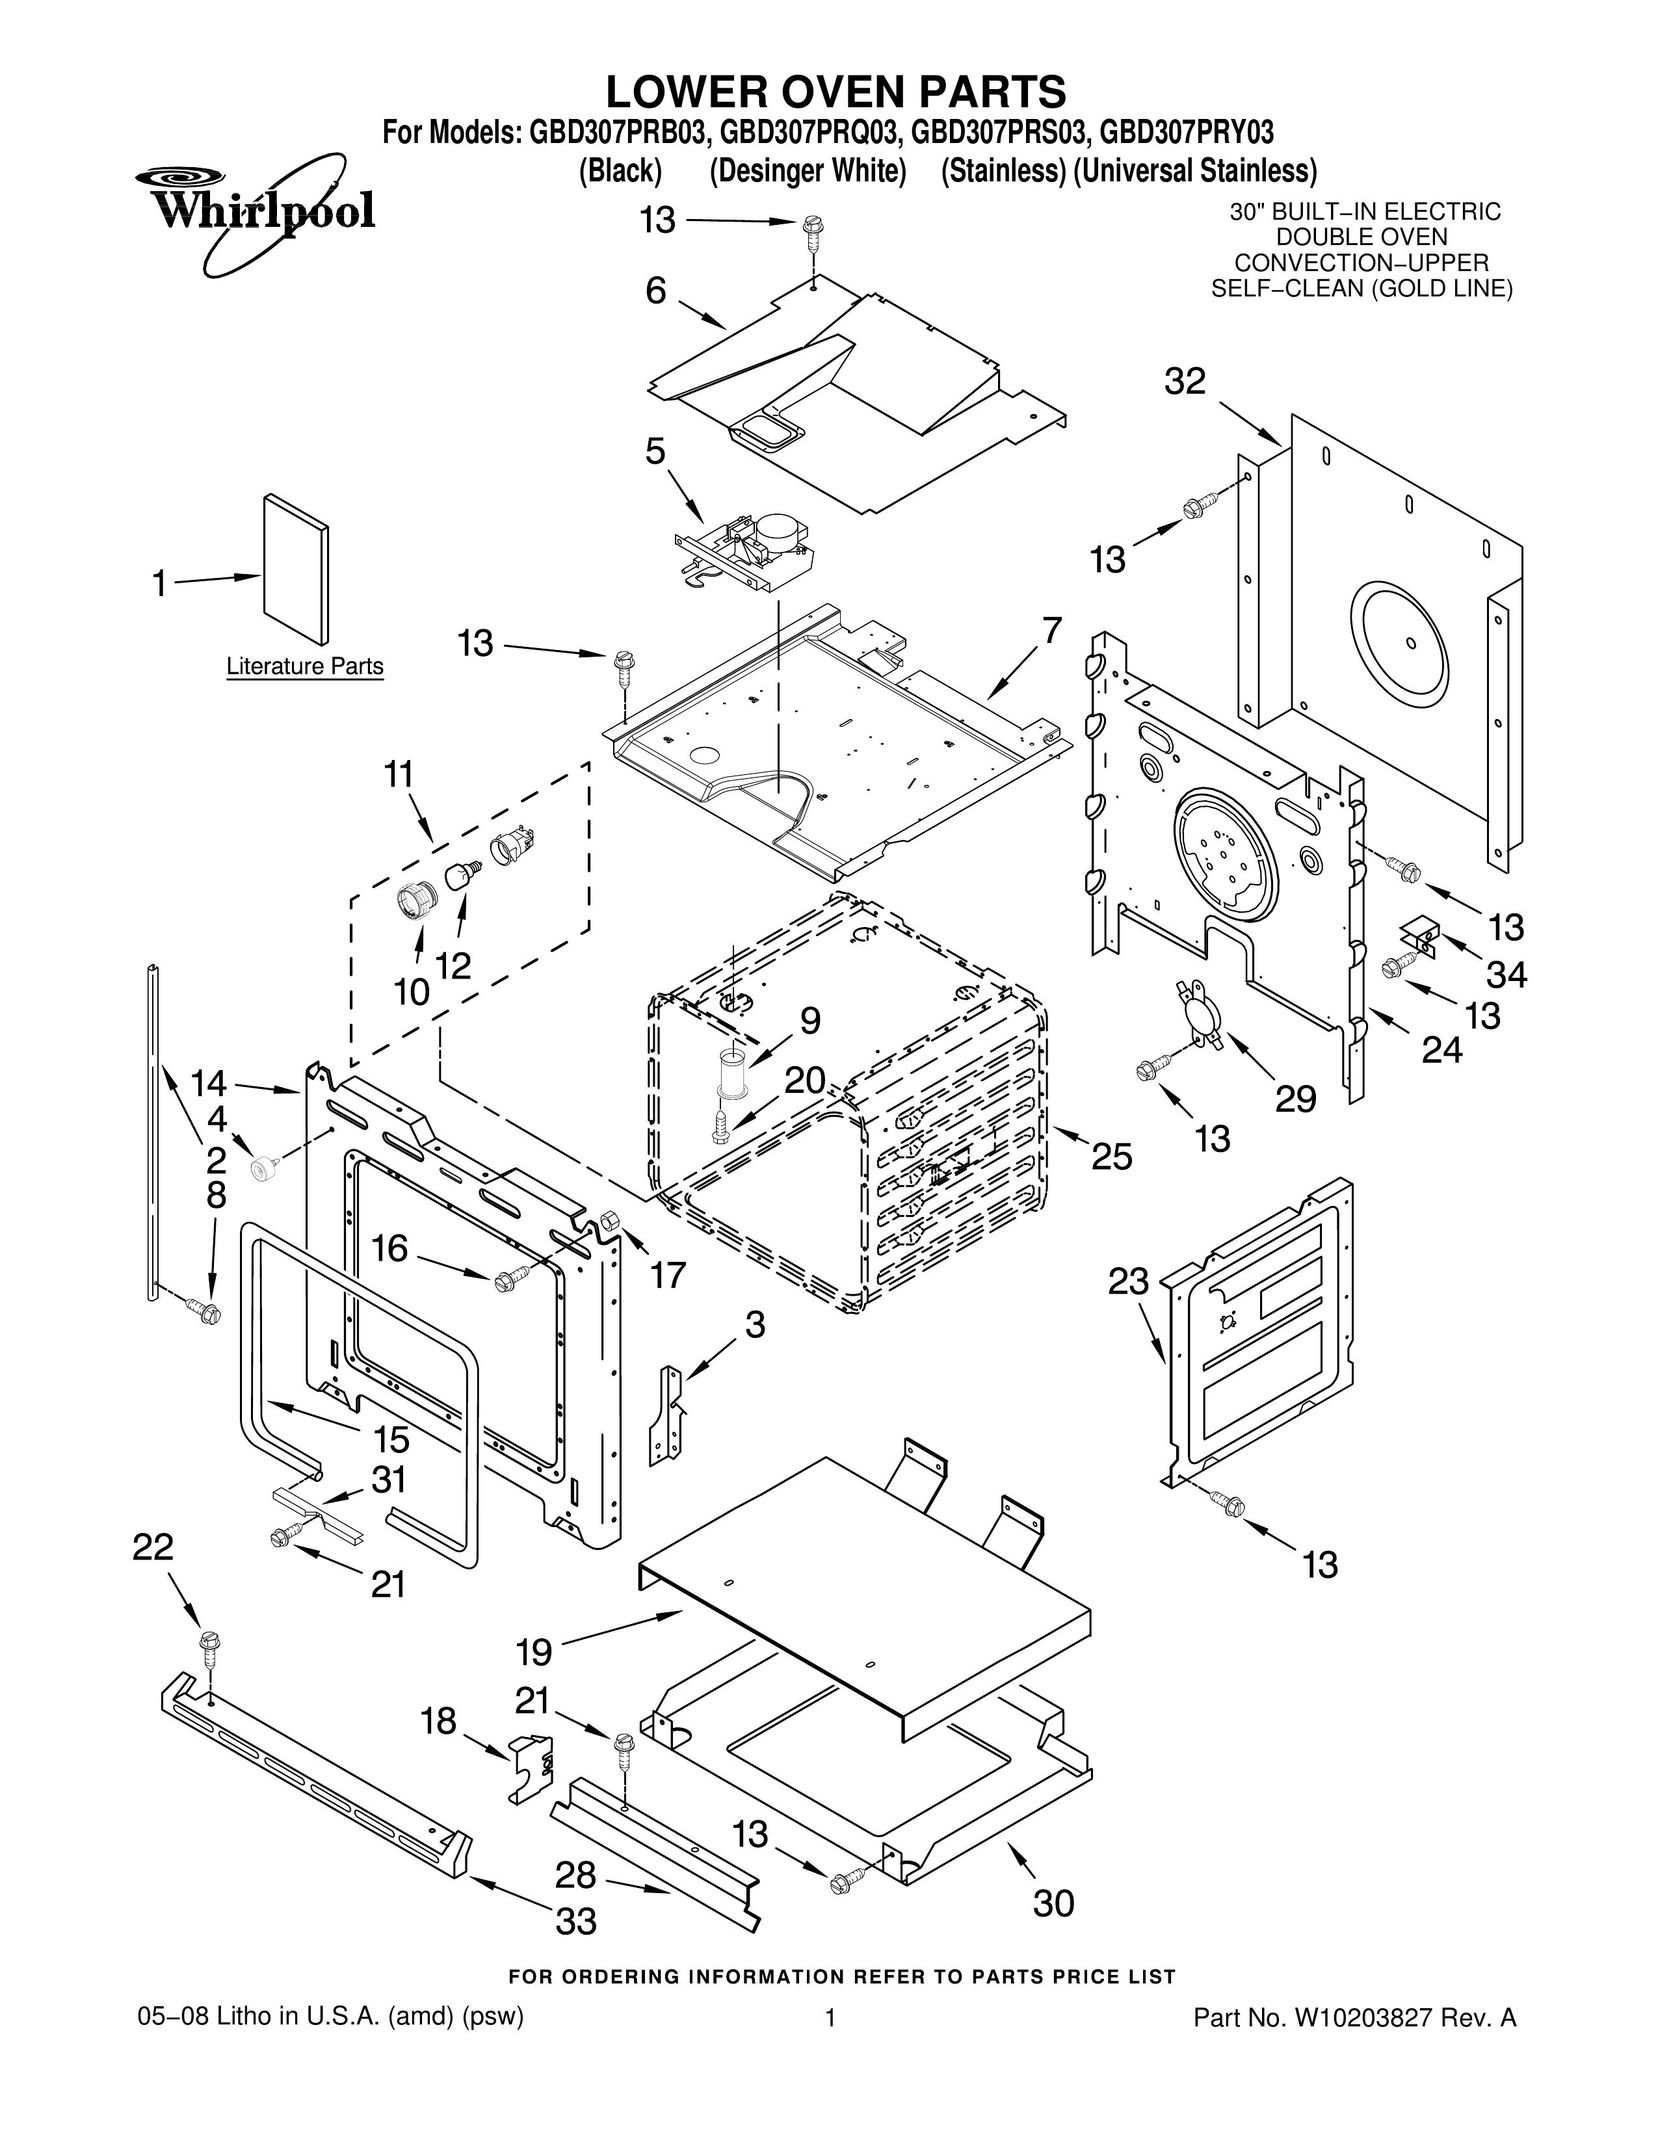 Whirlpool GBD307PRS03 Oven User Manual